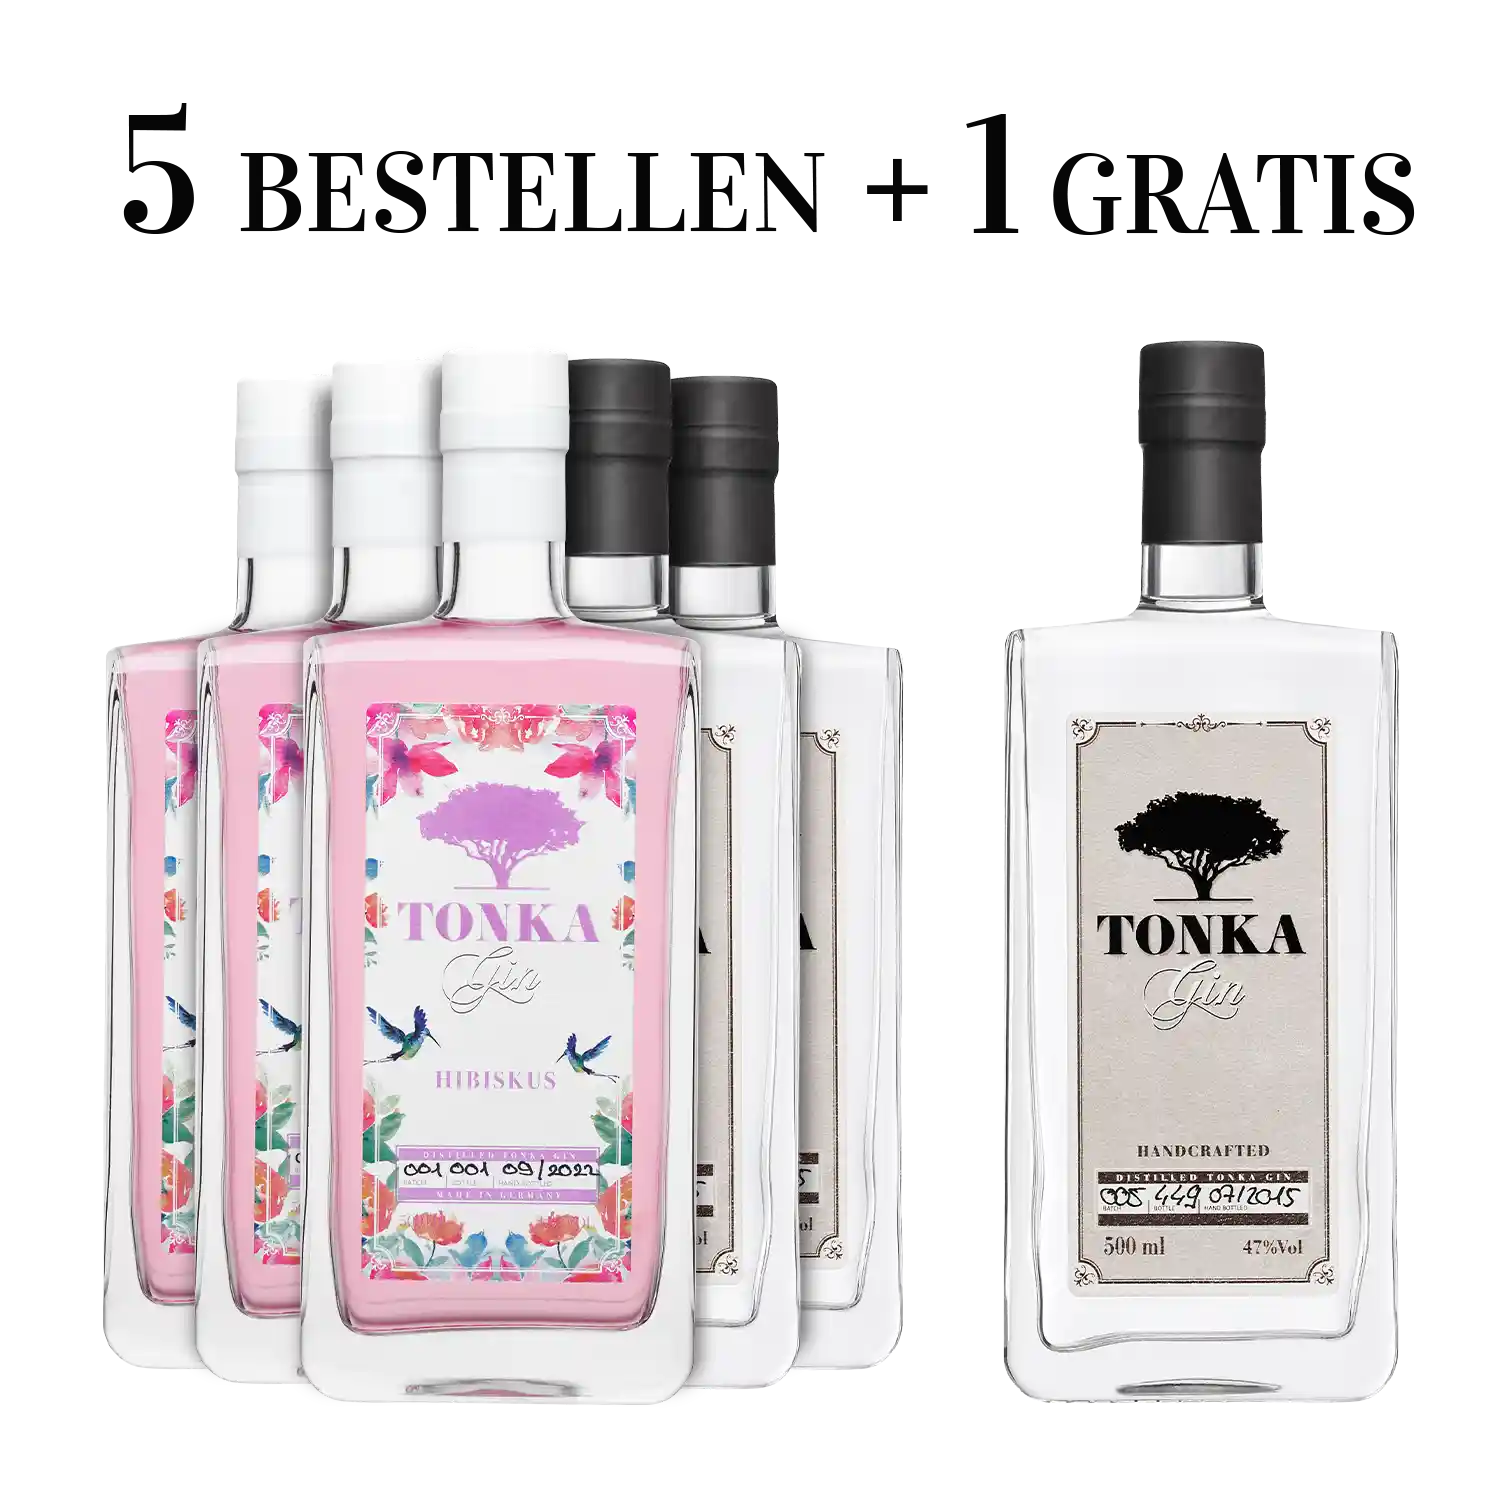 Eine Flasche Klassik Vorteilspaket | | Gin & Tonka Spirituosenliebhaber – gratis! Hibiskus